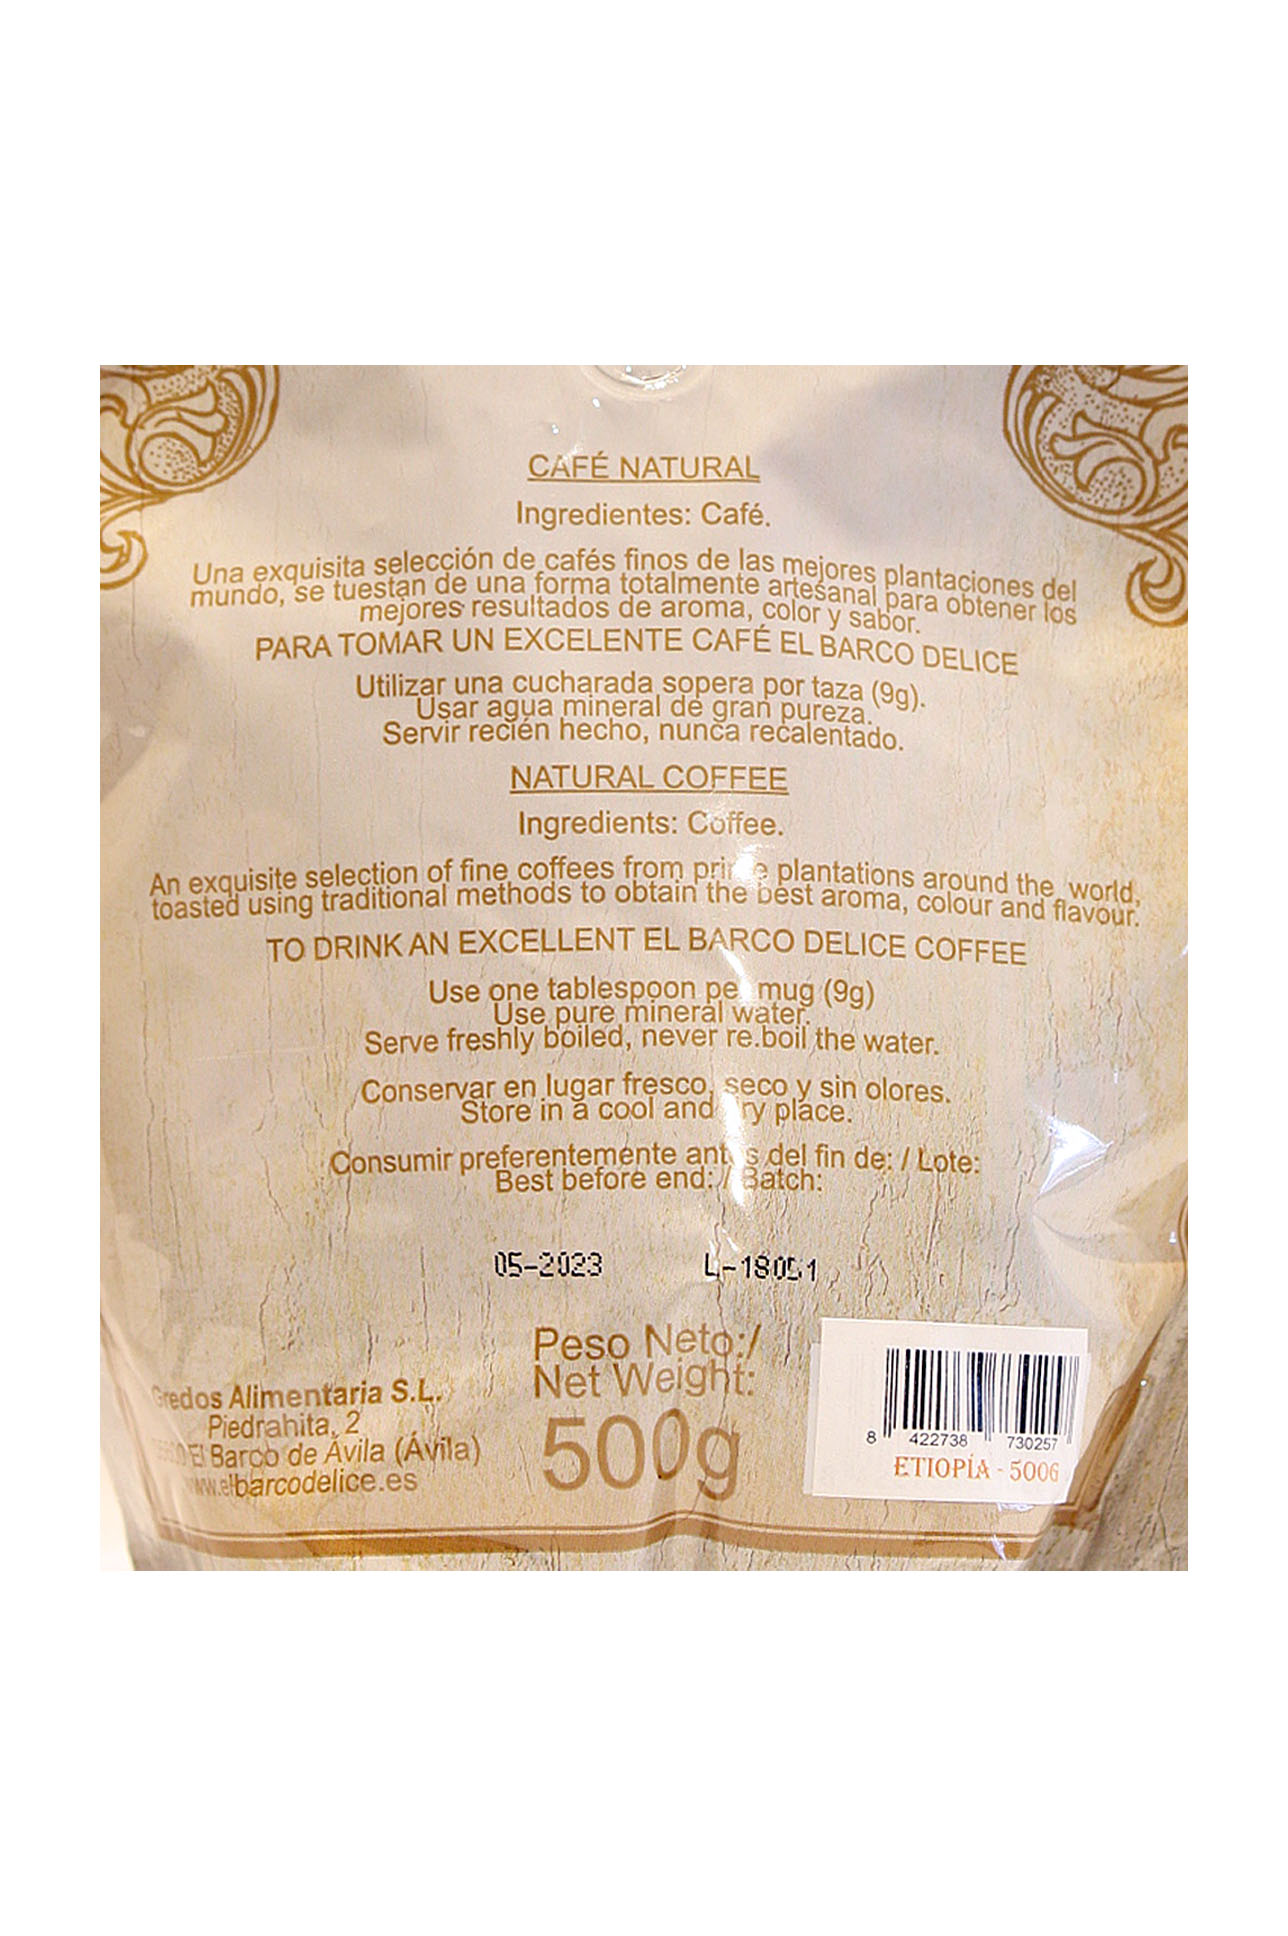 IC17: Ethiopian coffee